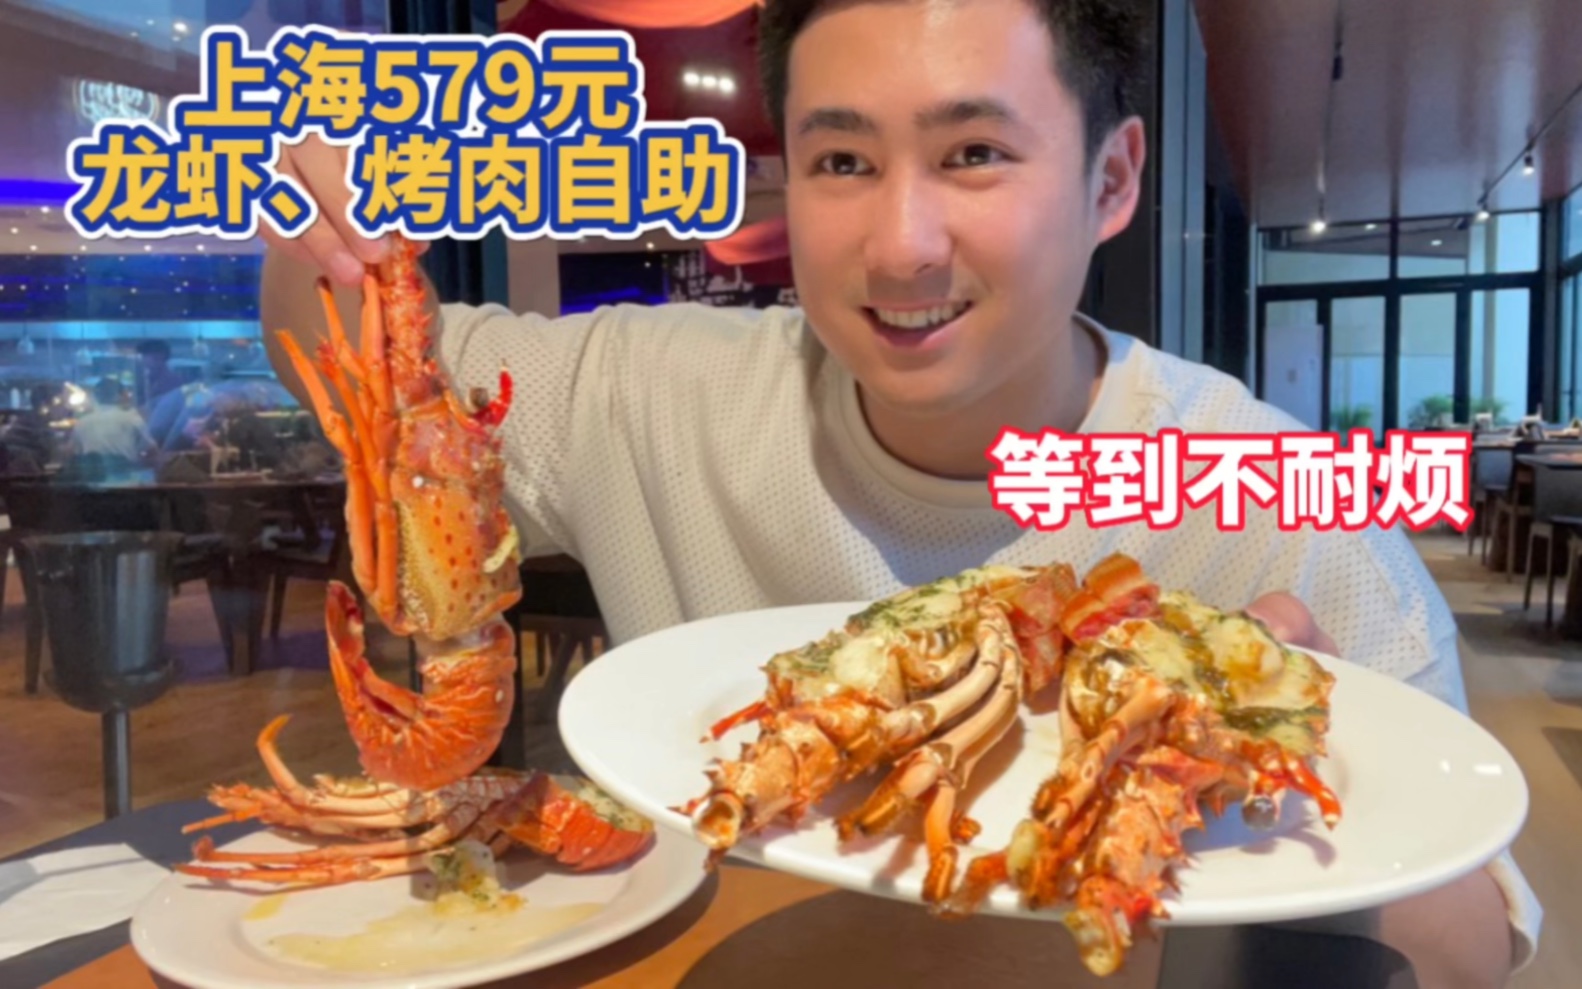 上海579元巴西龙虾随便吃的自助餐，各种烤肉疯狂投喂，龙虾控时控量。